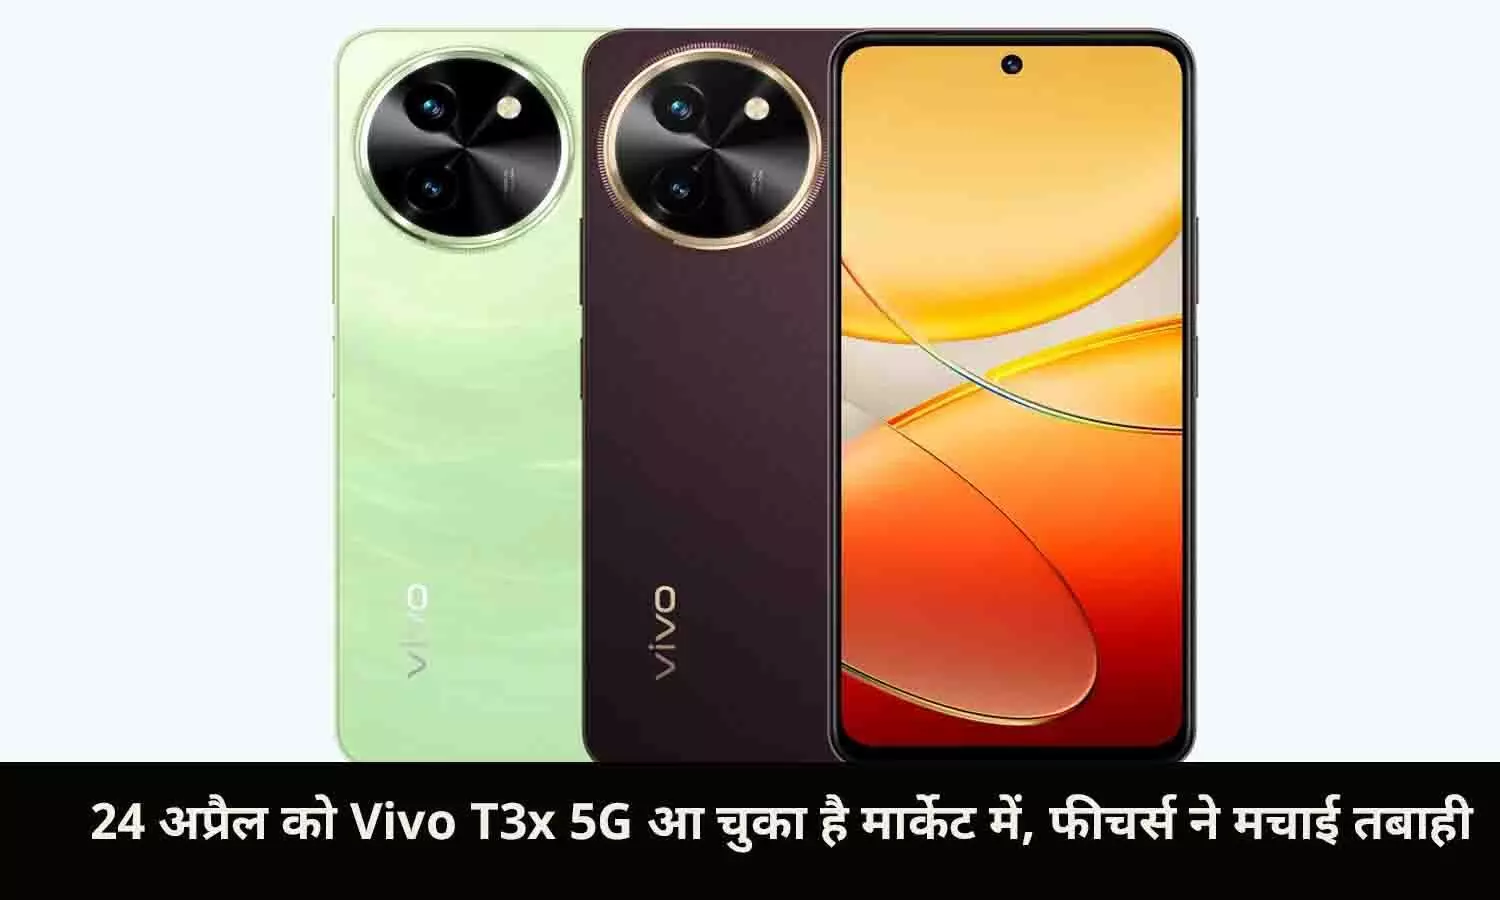 24 अप्रैल को Vivo T3x 5G आ चुका है मार्केट में, फीचर्स ने मचाई तबाही, हाथों-हाथ मिलेगी ₹1500 की छूट